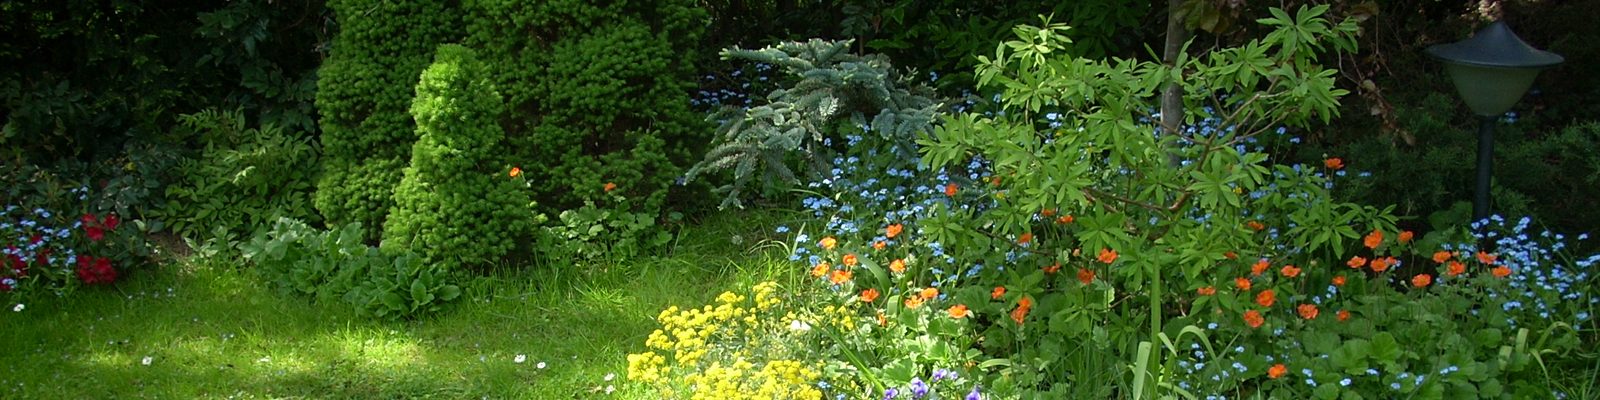 Alicja Majewska - ogród